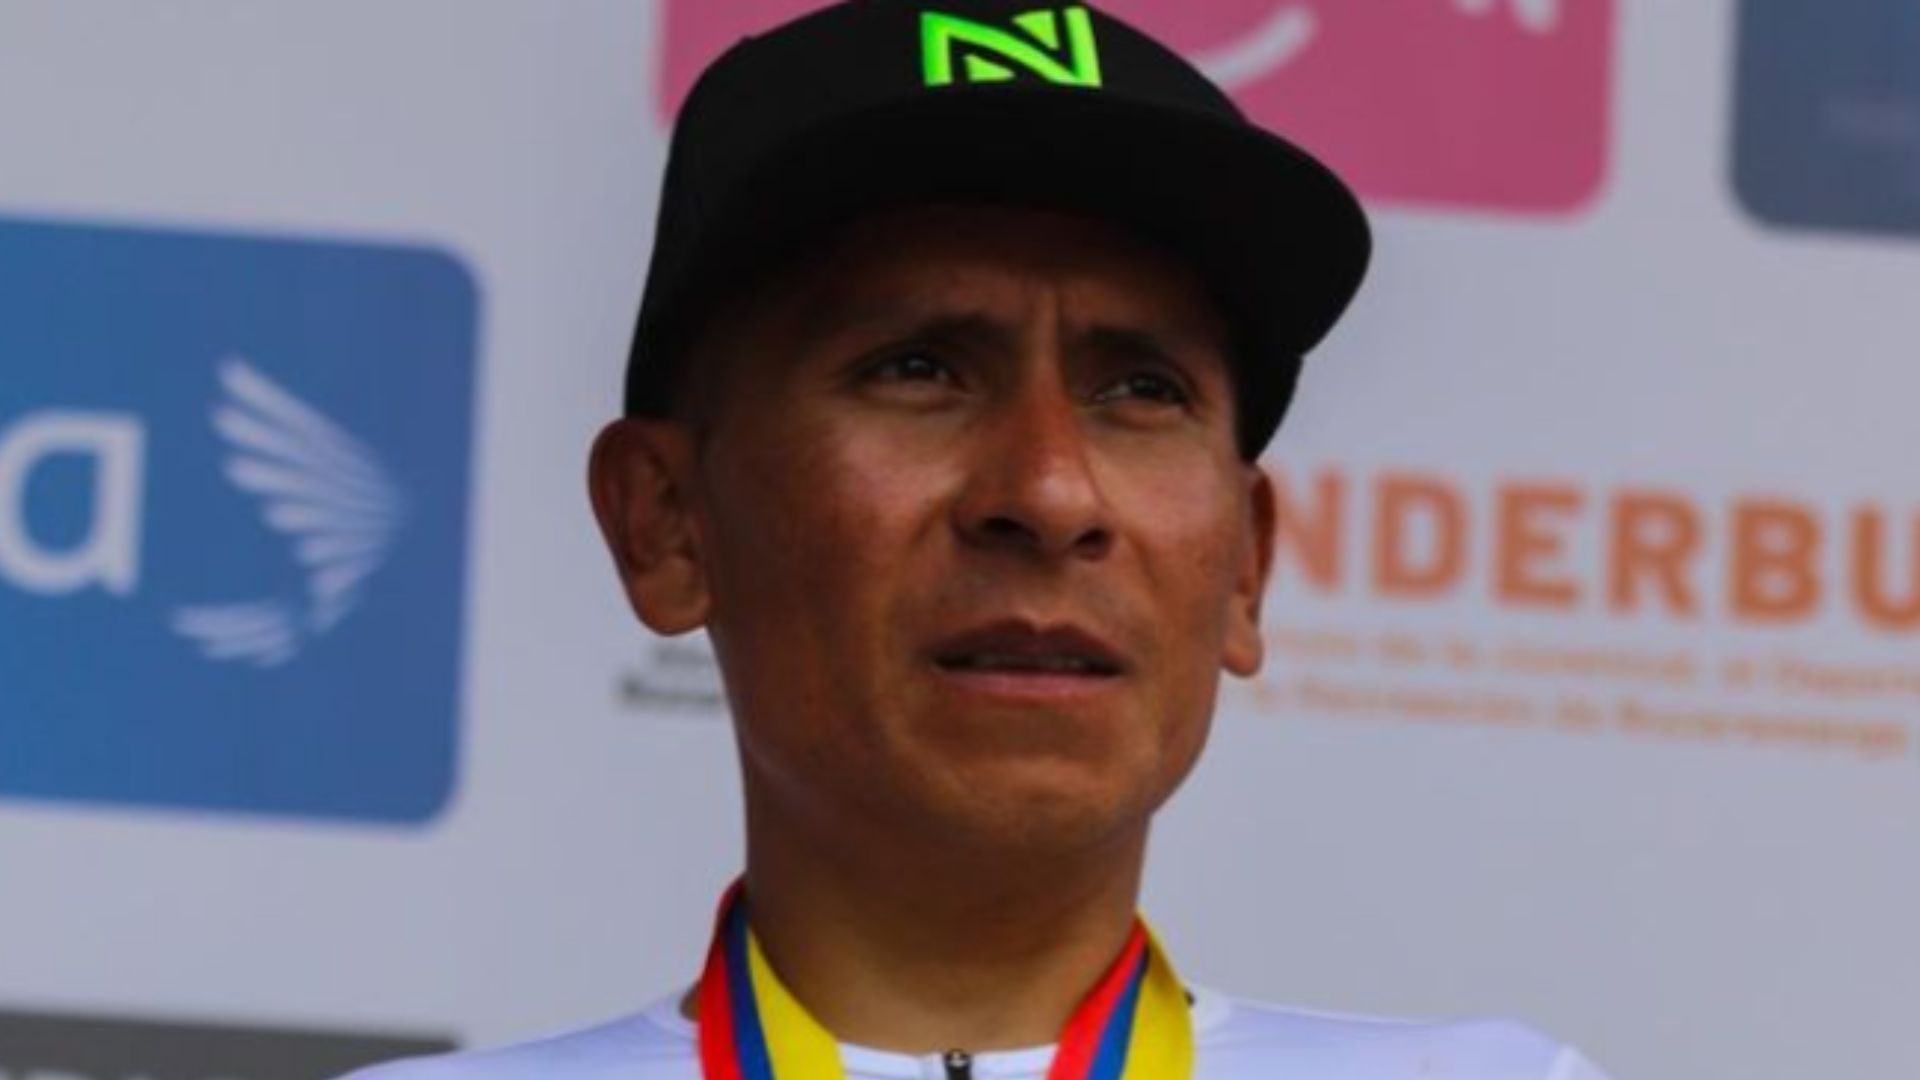 Le coureur colombien continue sans définir son avenir.  @nairoquincoficial - Instagram